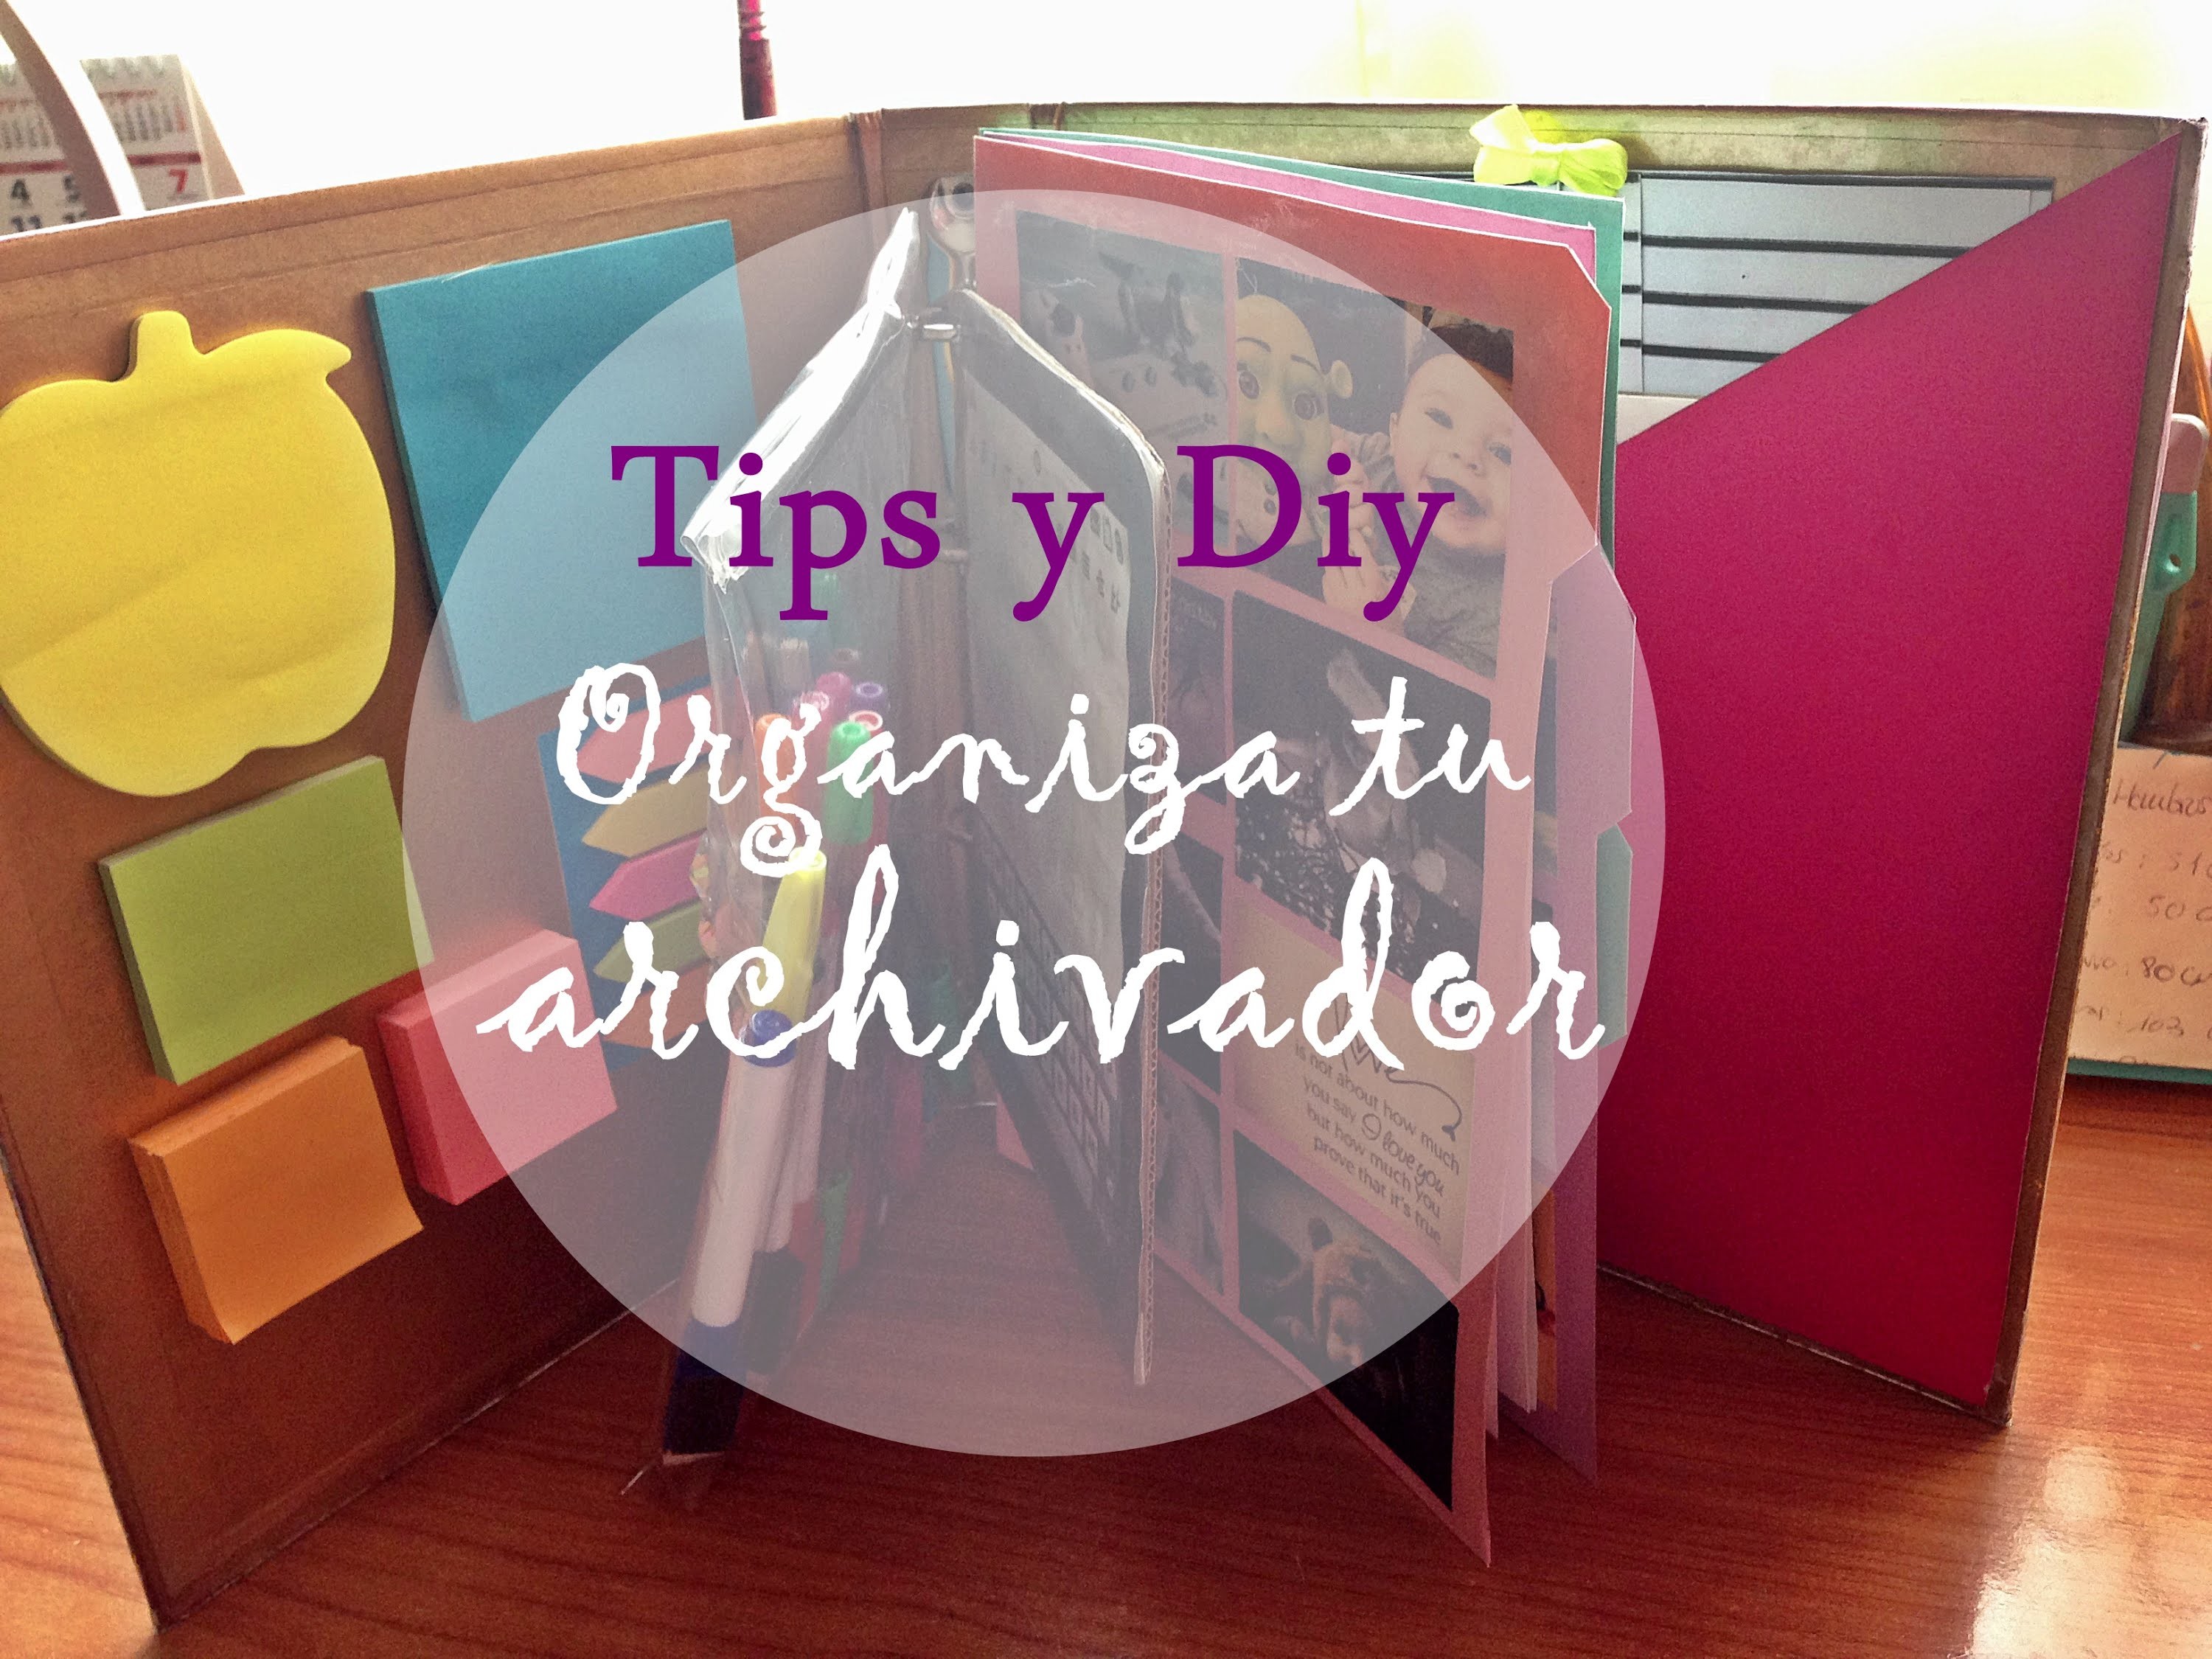 Tips y Diy | Organiza tu archivador chic